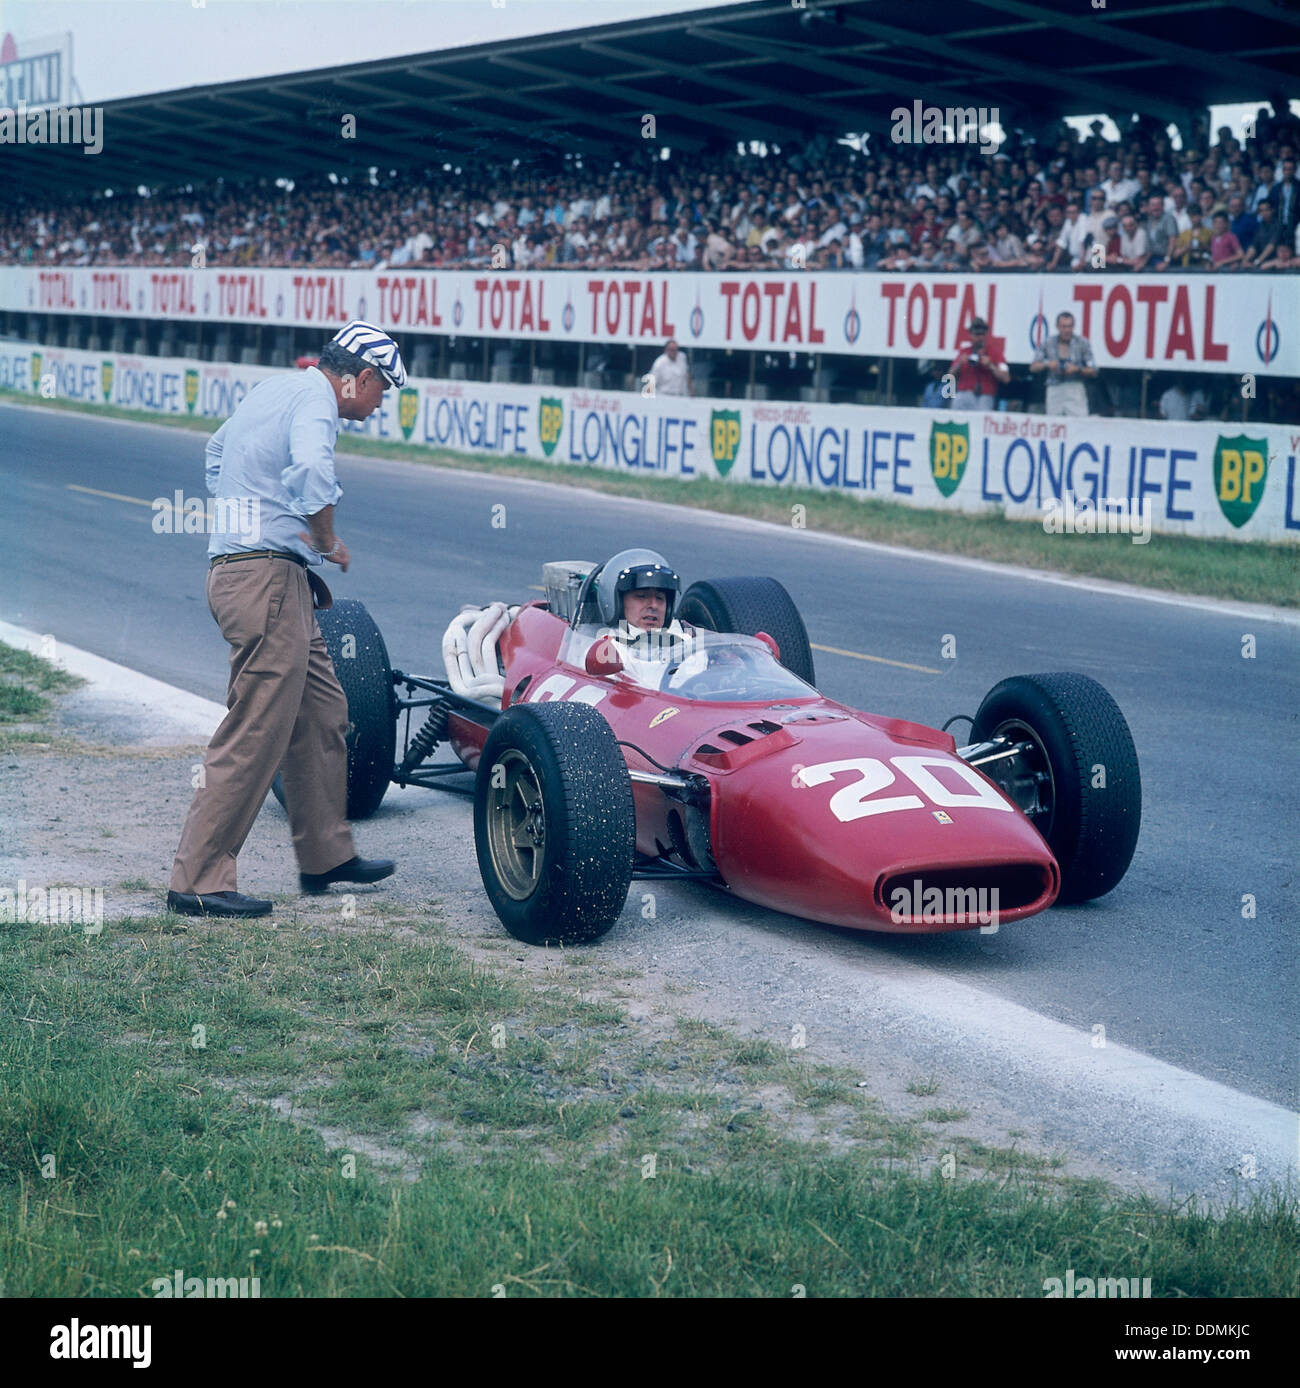 Lorenzo Bandini dans une Ferrari 312, Grand Prix de France, Reims, France, 1966. Artiste : Inconnu Banque D'Images